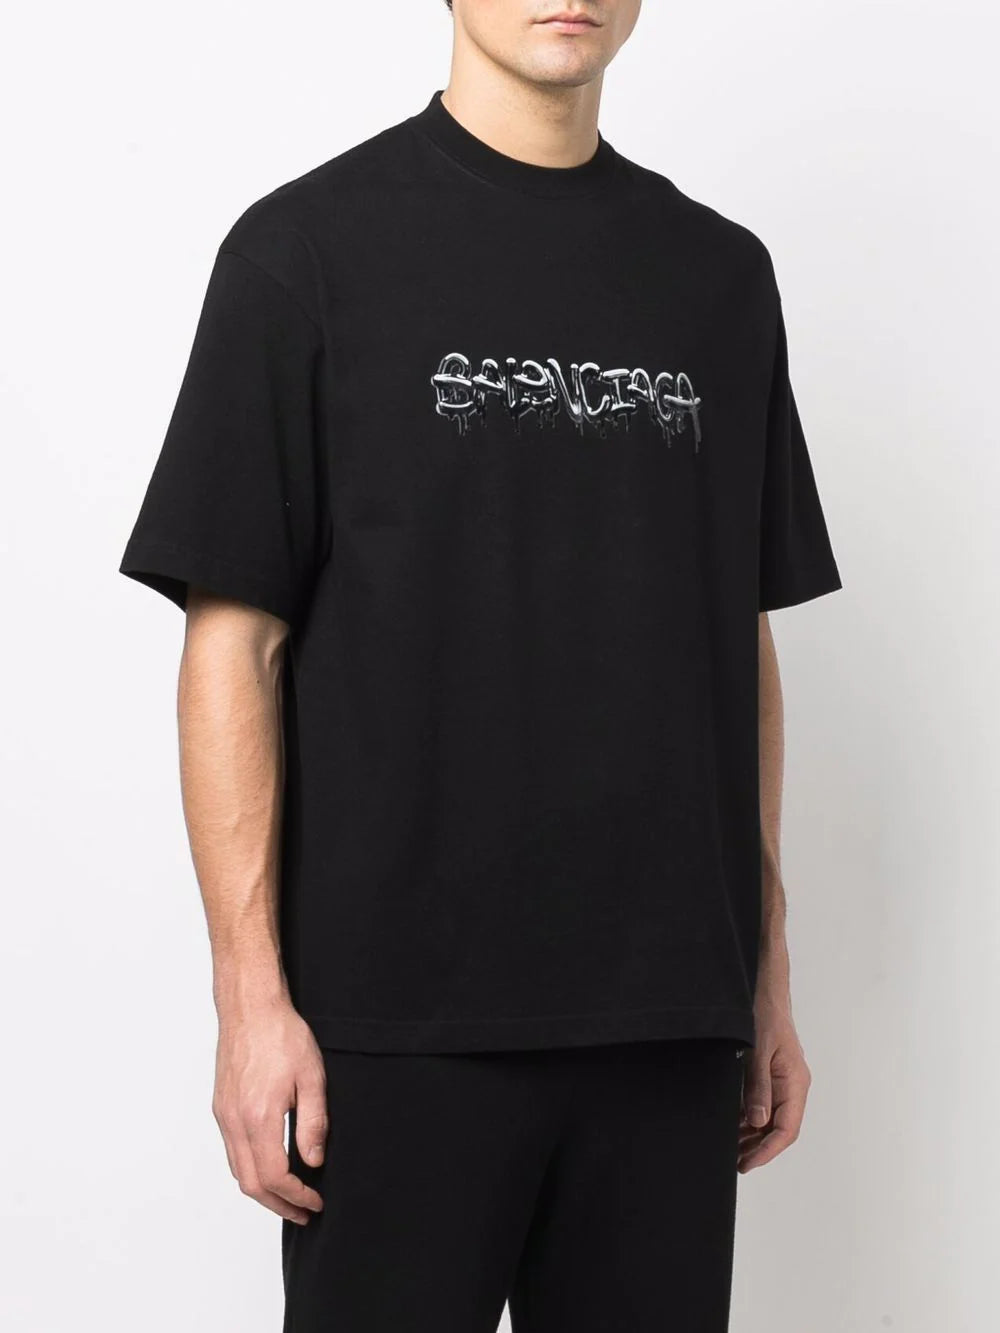 Balenciaga logo printed crew neck T-shirt